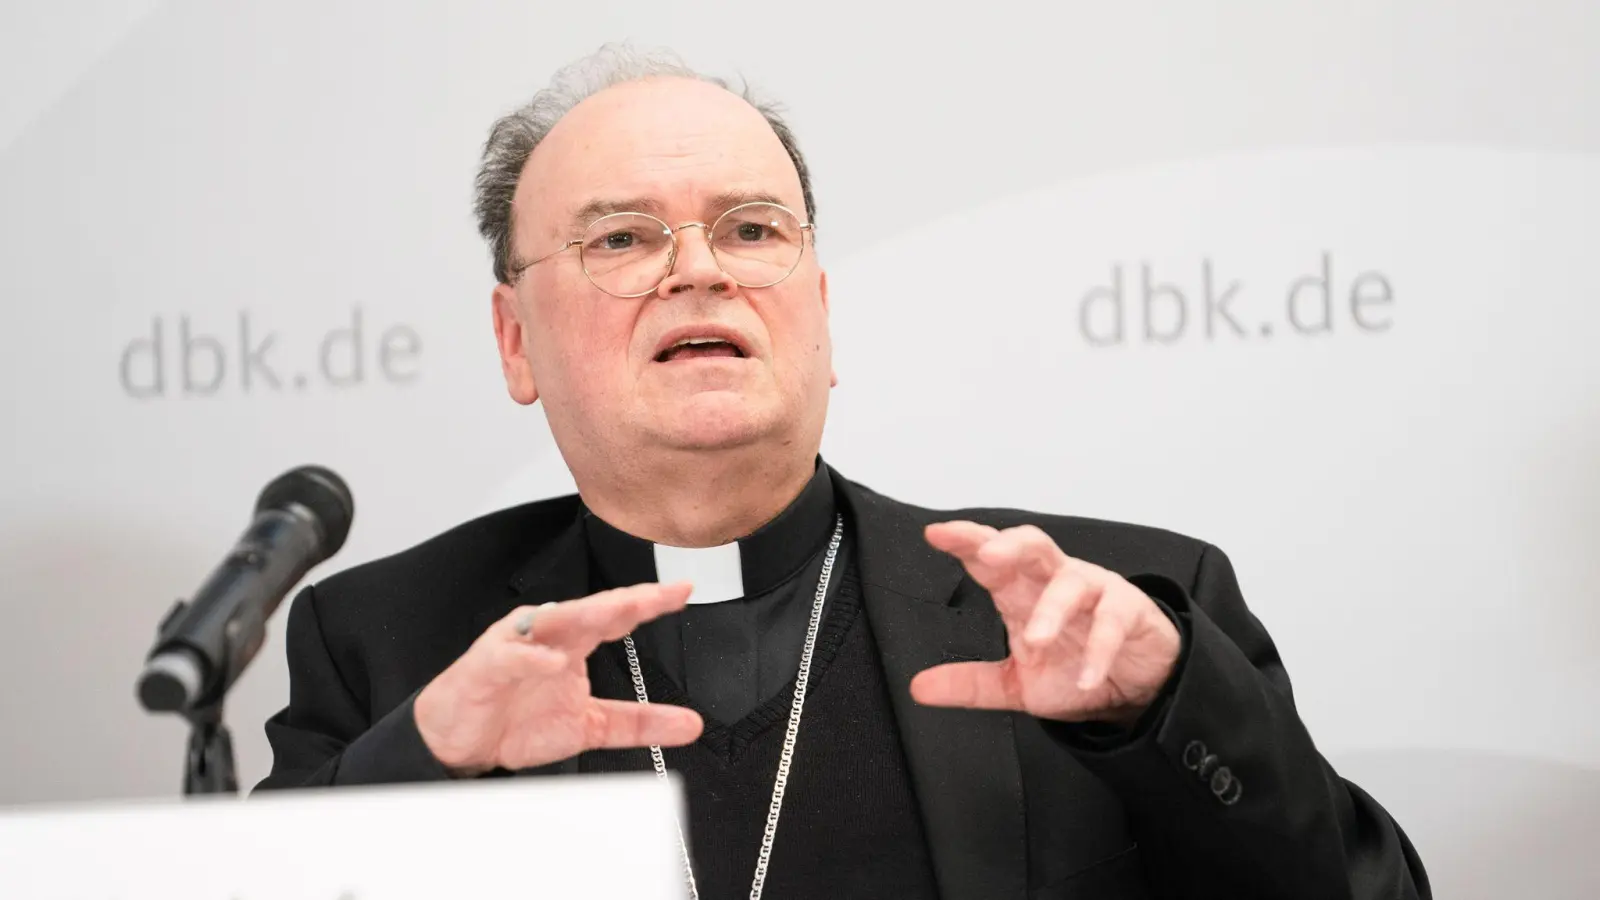 Der Augsburger Bischof Bertram Meier spricht bei einer Pressekonferenz. (Foto: Nicolas Armer/dpa/Archivbild)